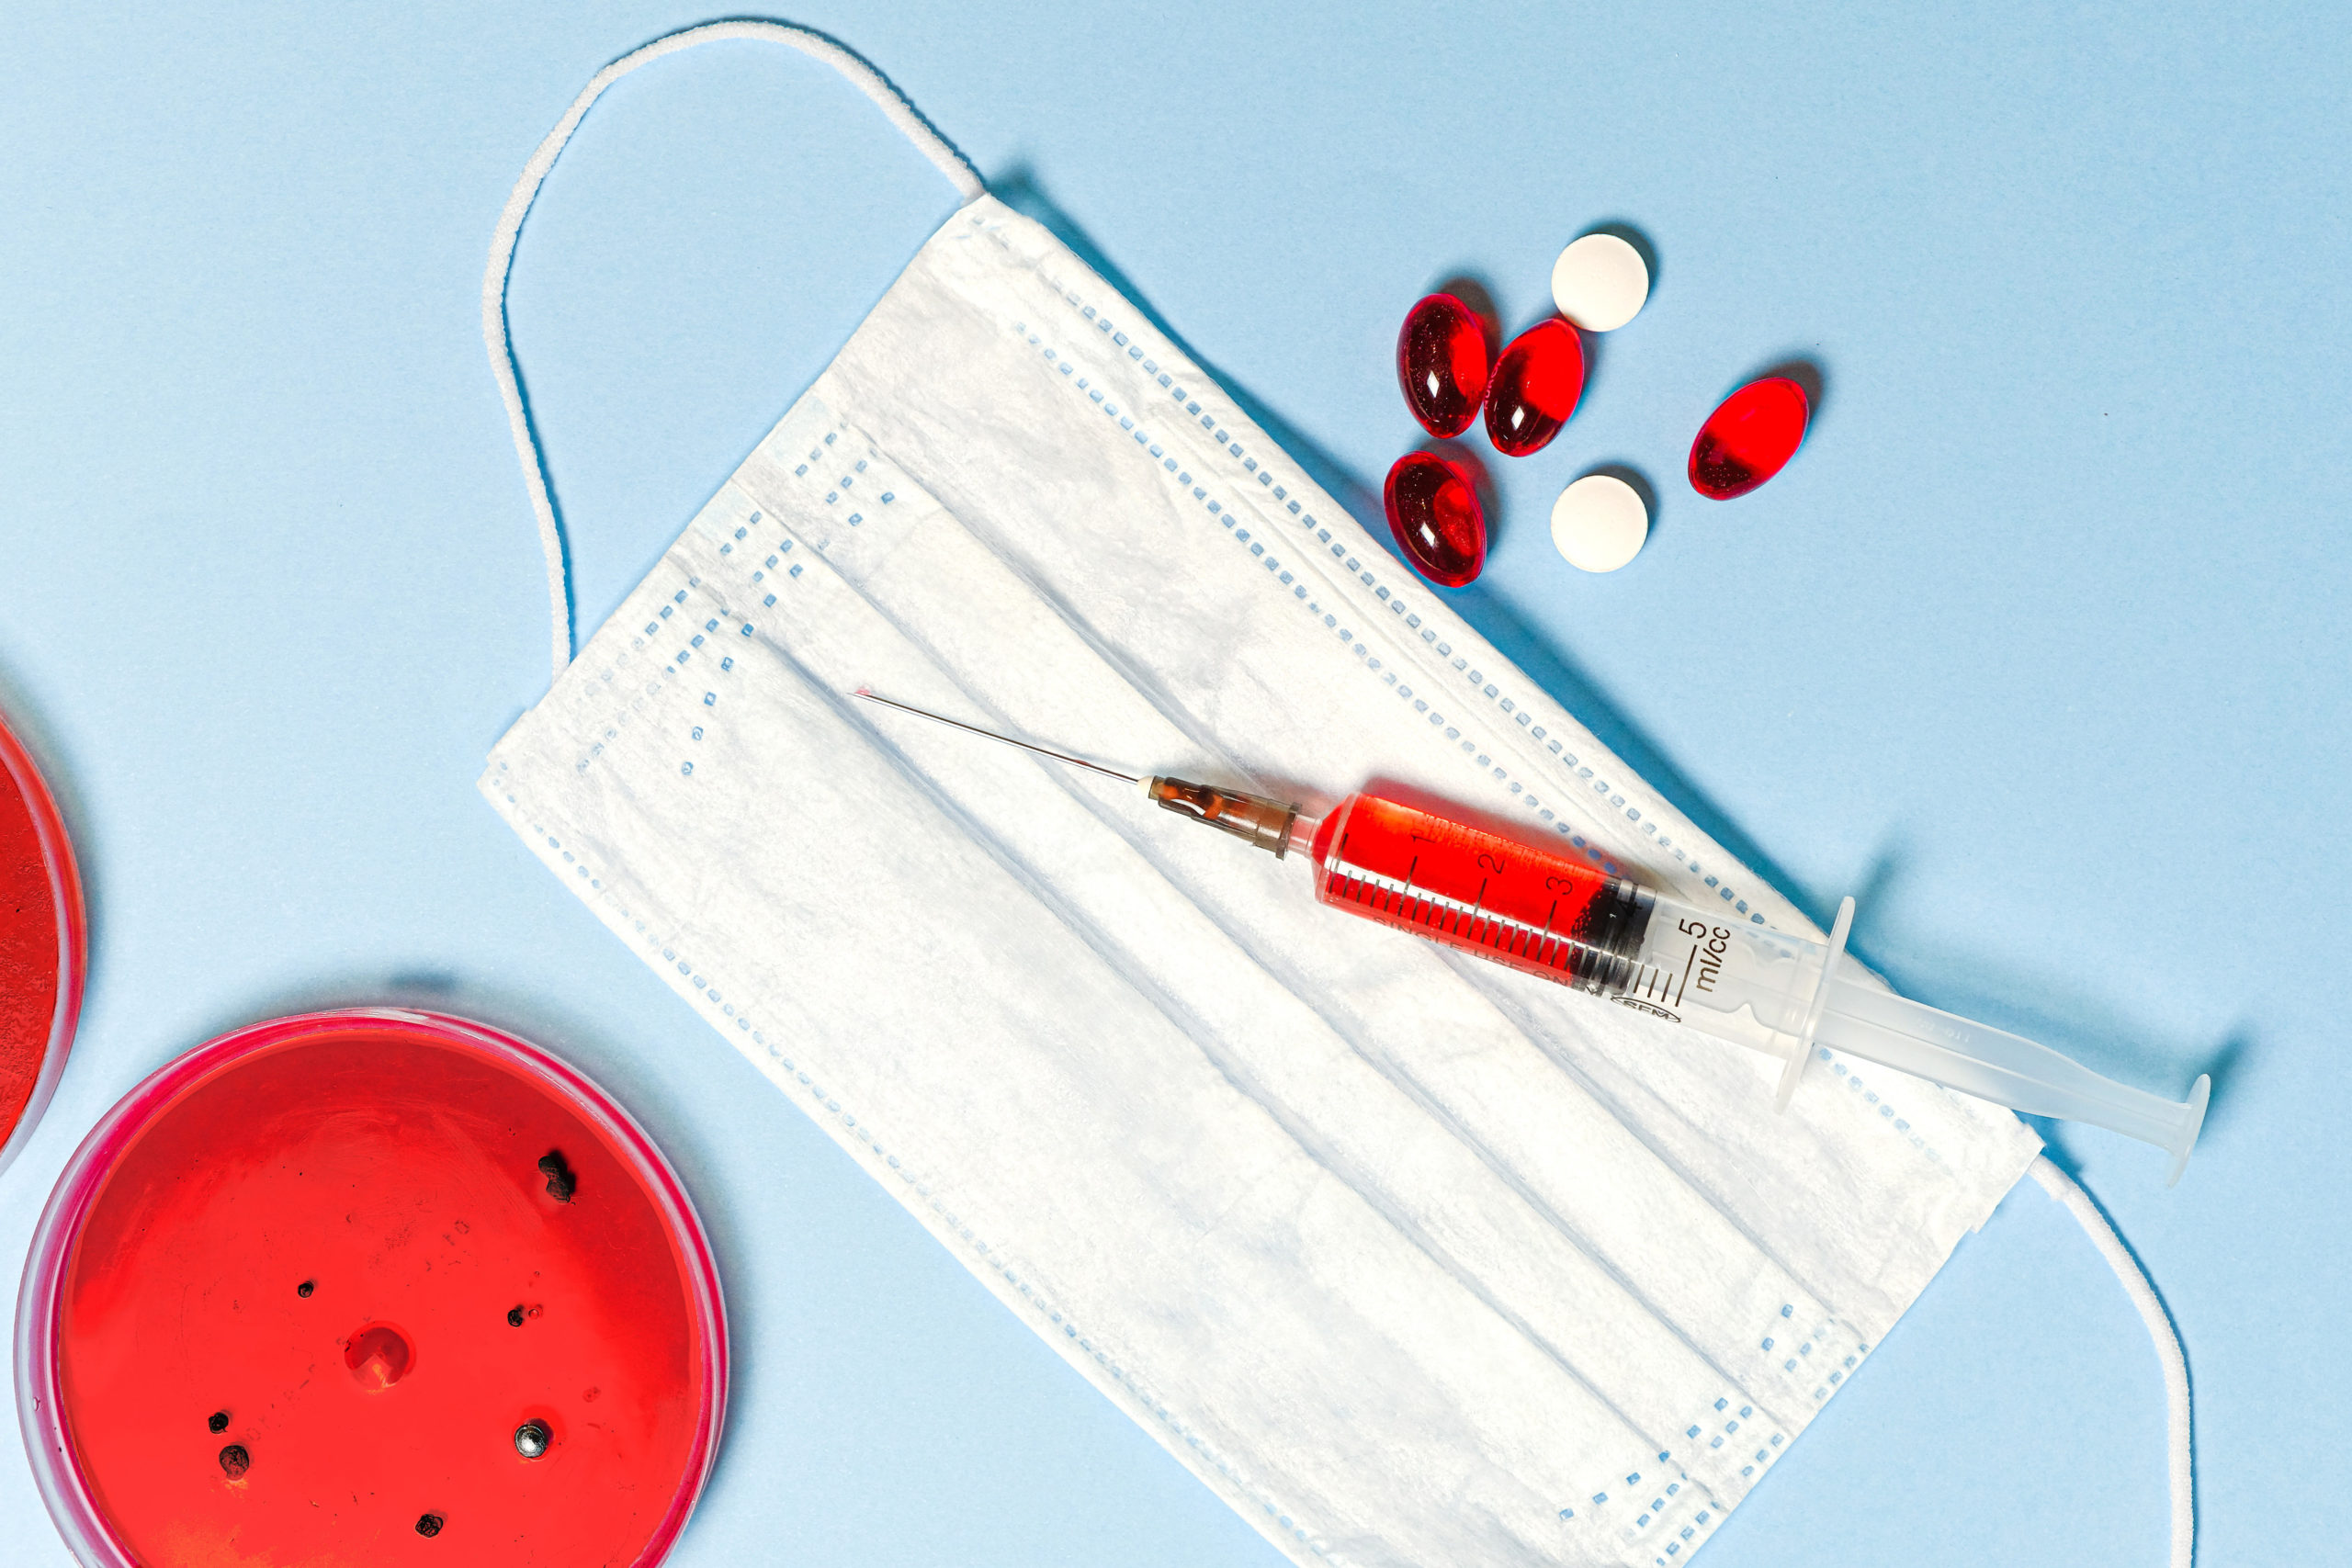 Zdjęcie przedstawiające strzykawkę z czerwonym płynem, szalkę petriego z wyhodowanymi bakteriami, maseczkę jednorazową oraz medykamenty - badania laboratoryjne w Krzyżu Wielkopolskim